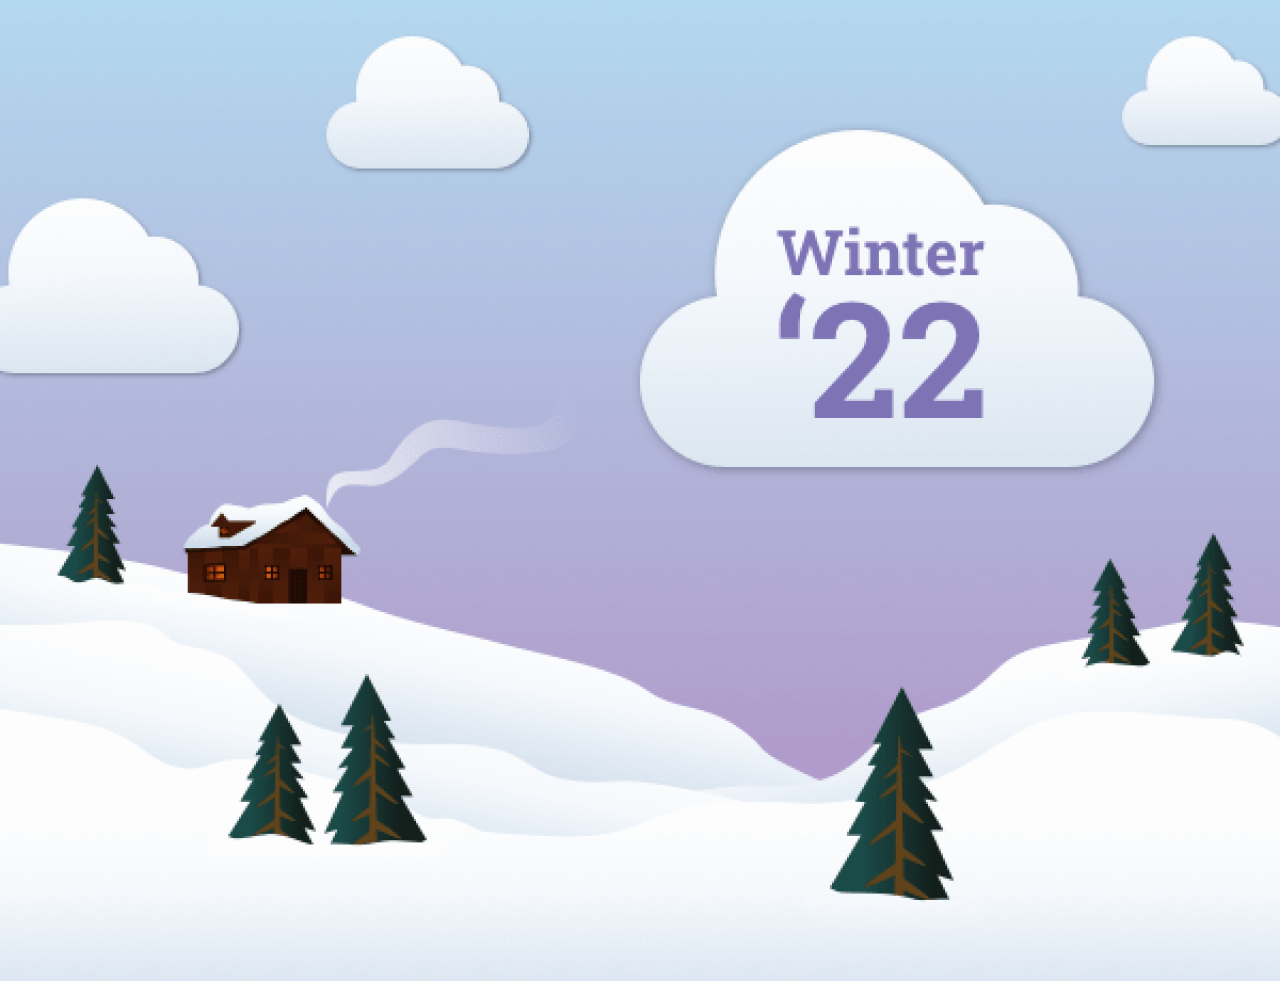 Salesforce Winter '22 Release.